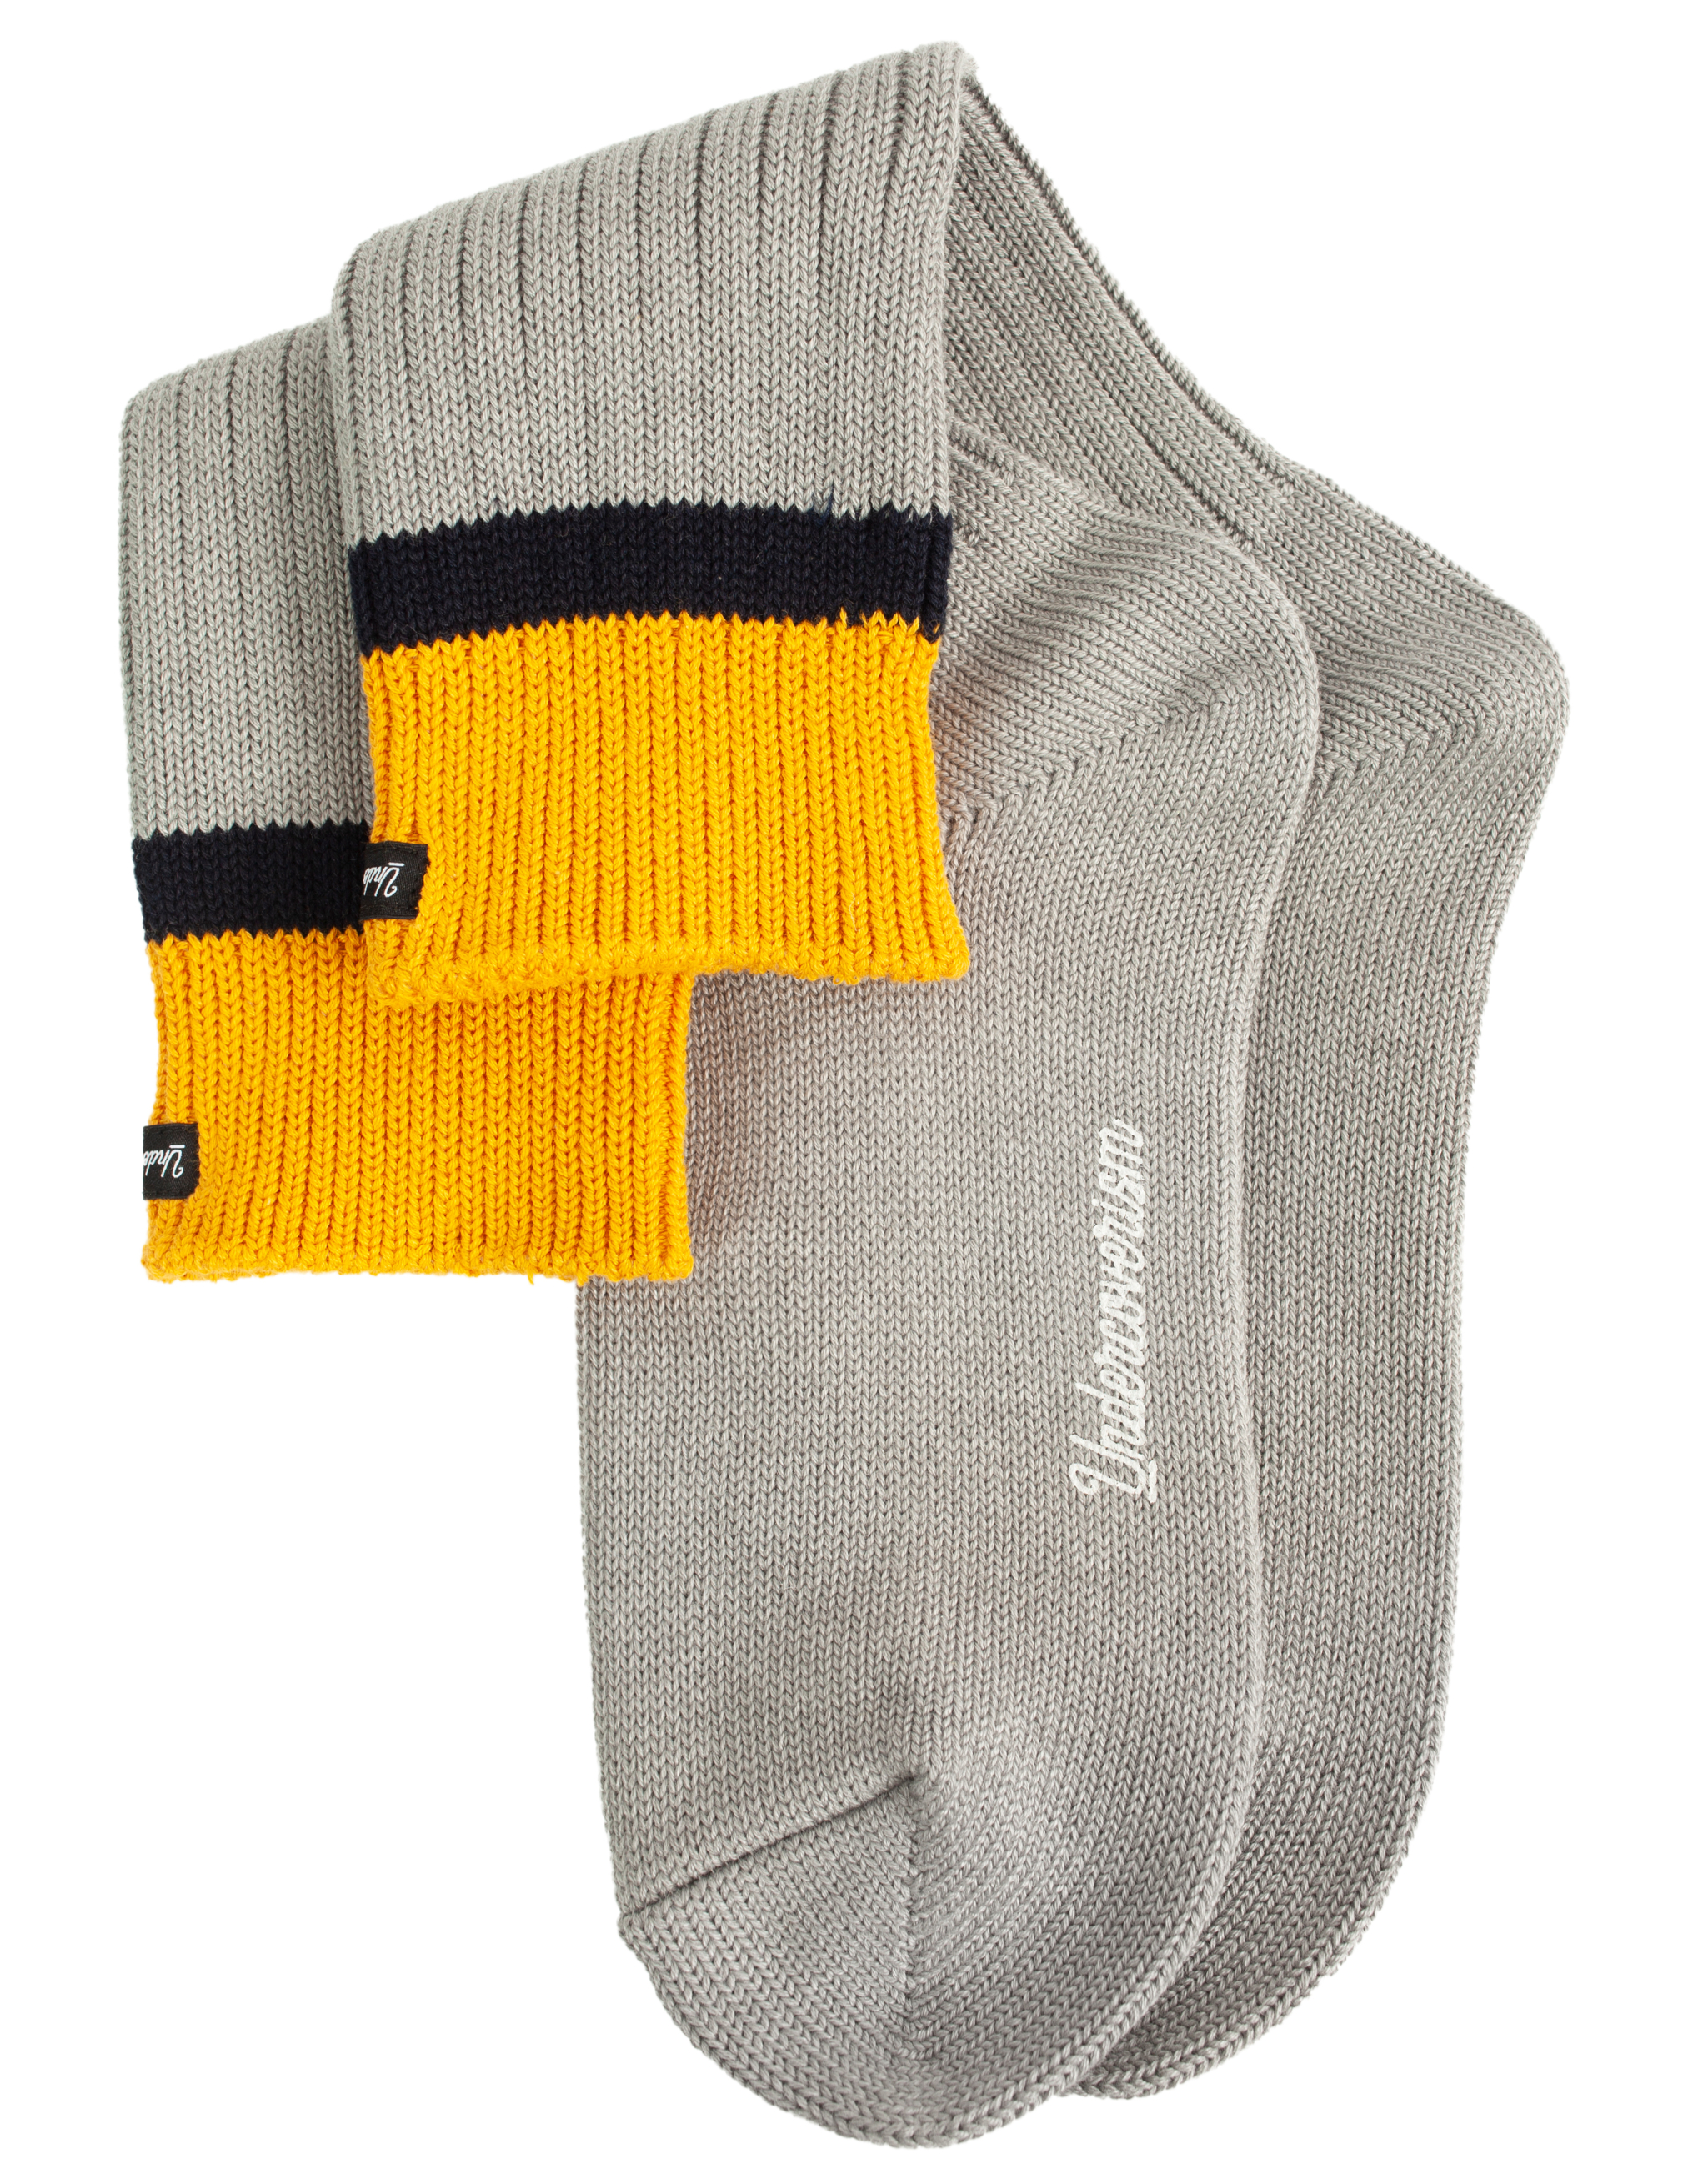 Серые носки с нашивкой Undercover UI1B4L01/gray, размер One Size UI1B4L01/gray - фото 2